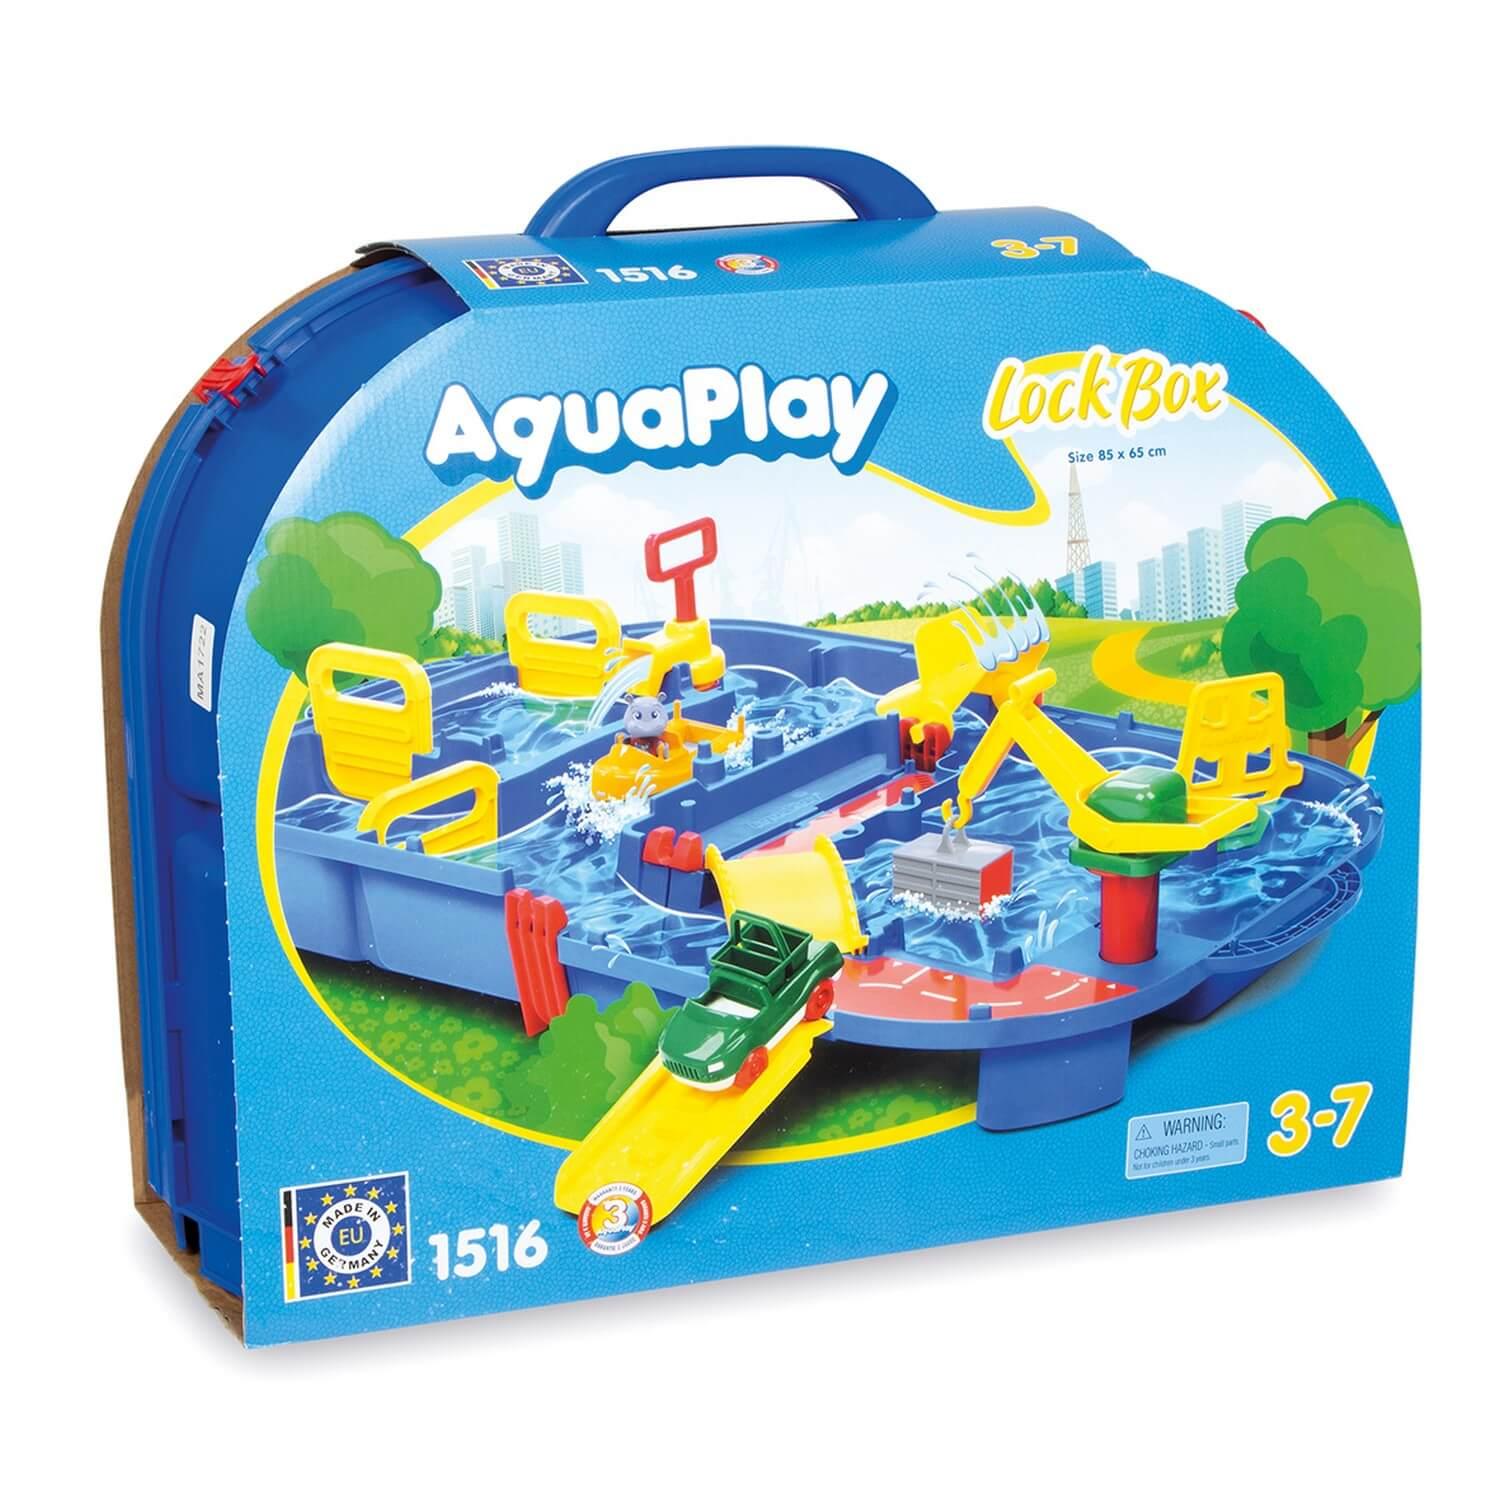 Circuit à eau portable : Aquaplay LockBox - Jeux et jouets Aquaplay -  Avenue des Jeux